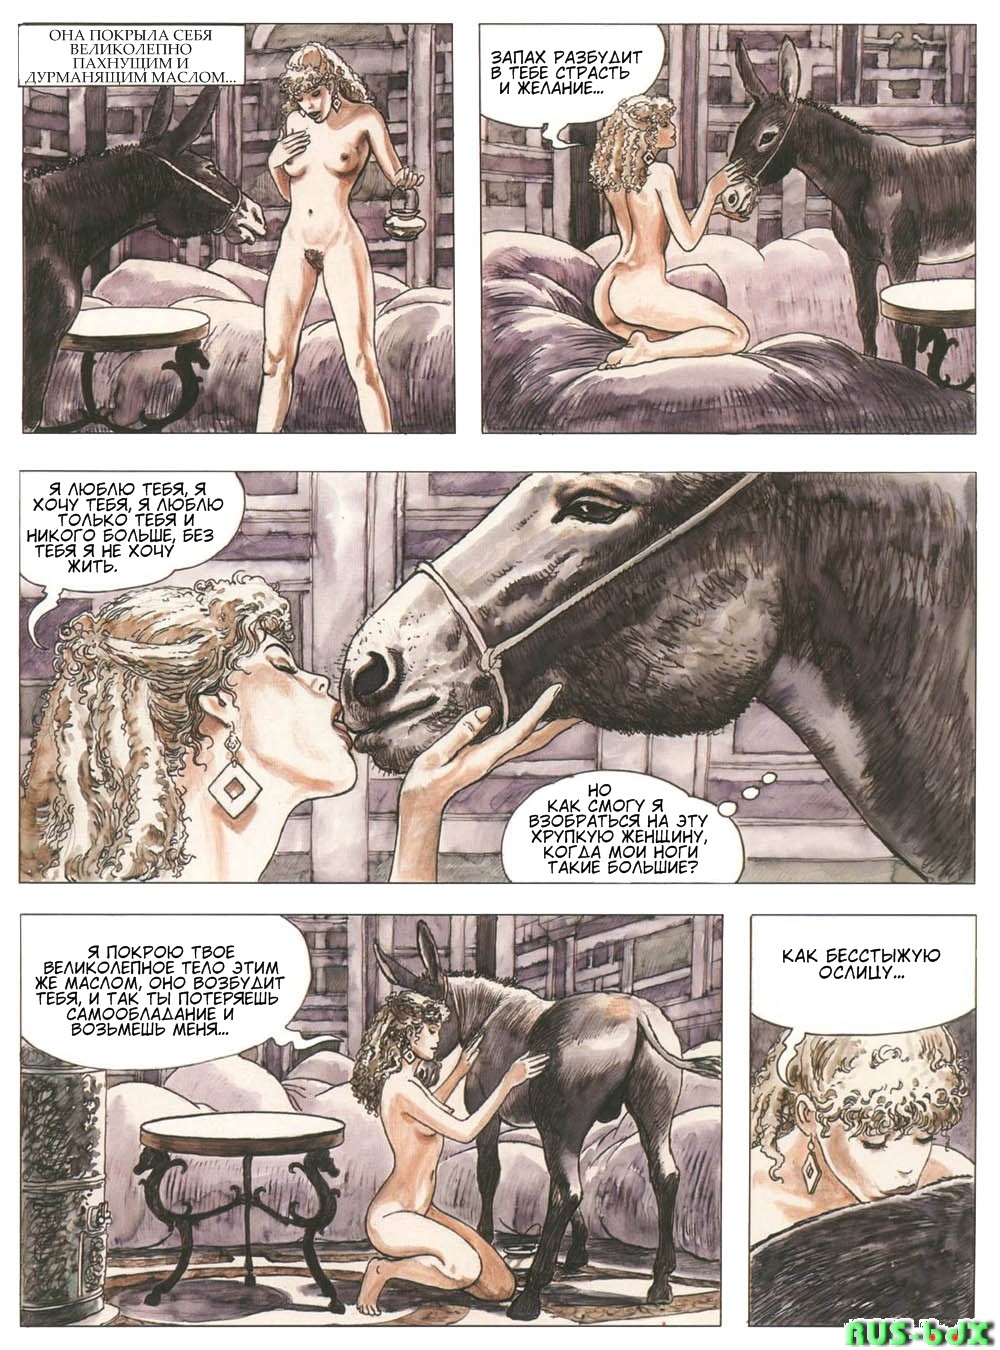 Превращение Луция в осла »Золотой осел« - порно комикс № 45